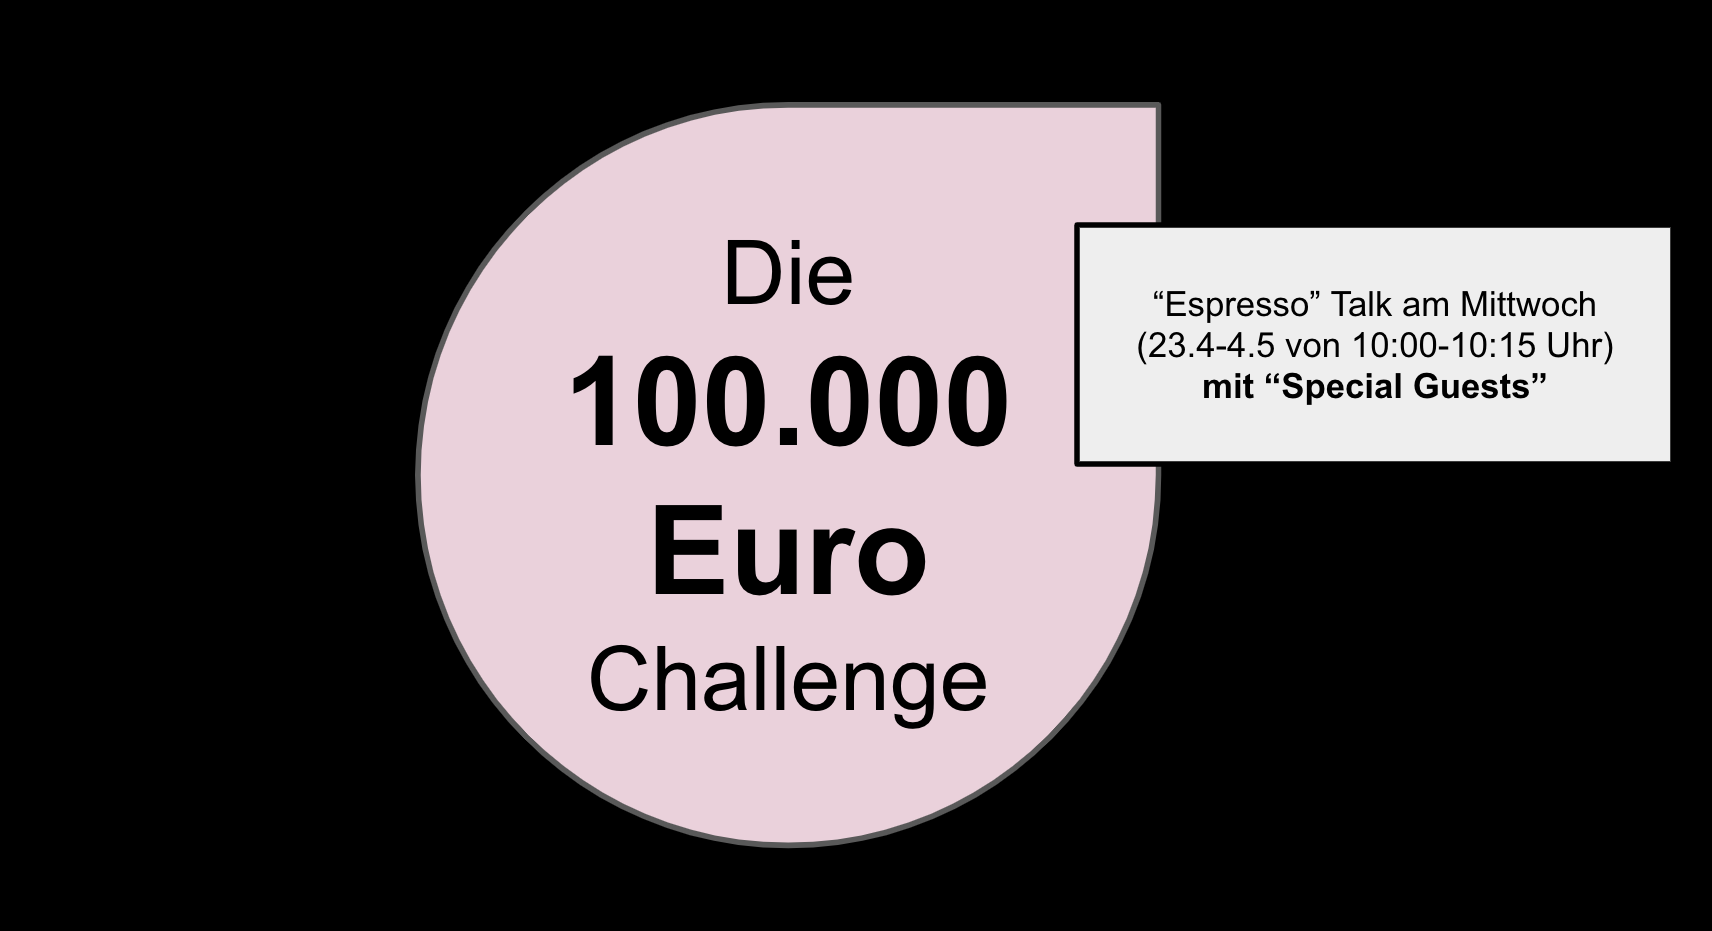 Die 100.000 Euro Challenge. Zusatz: “Espresso” Talk am Mittwoch (23.4-4.5 von 10:00 Uhr bis 10:15 Uhr) mit "Special Guests"